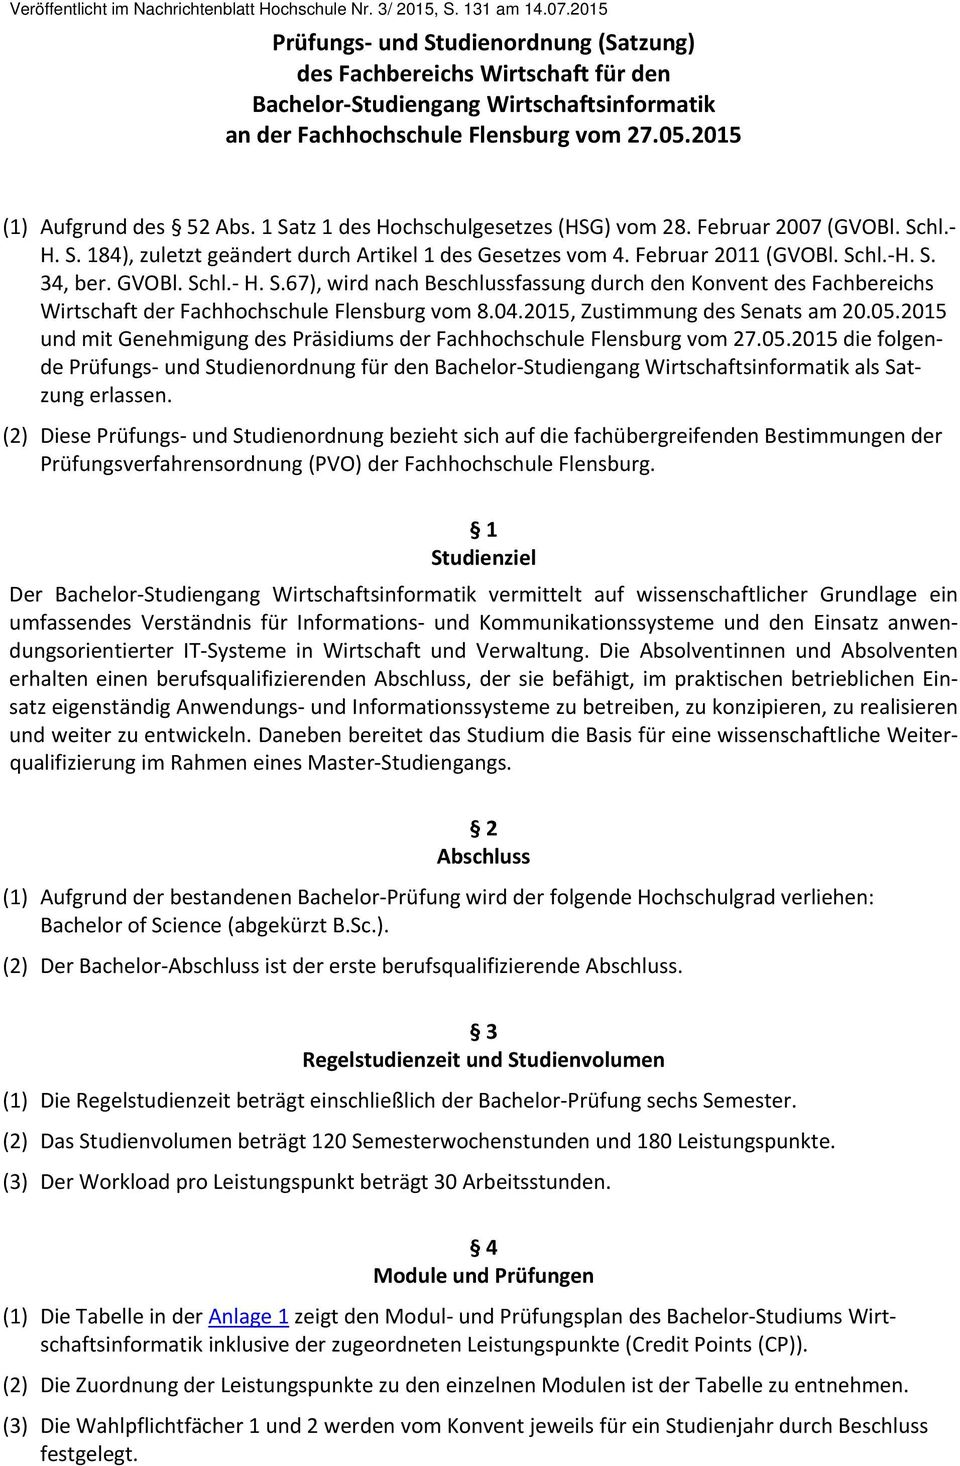 1 Satz 1 des Hochschulgesetzes (HSG) vom 28. Februar 2007 (GVOBl. Schl. H. S. 184), zuletzt geändert durch Artikel 1 des Gesetzes vom 4. Februar 2011 (GVOBl. Schl. H. S. 34, ber. GVOBl. Schl. H. S.67), wird nach Beschlussfassung durch den Konvent des Fachbereichs Wirtschaft der Fachhochschule Flensburg vom 8.